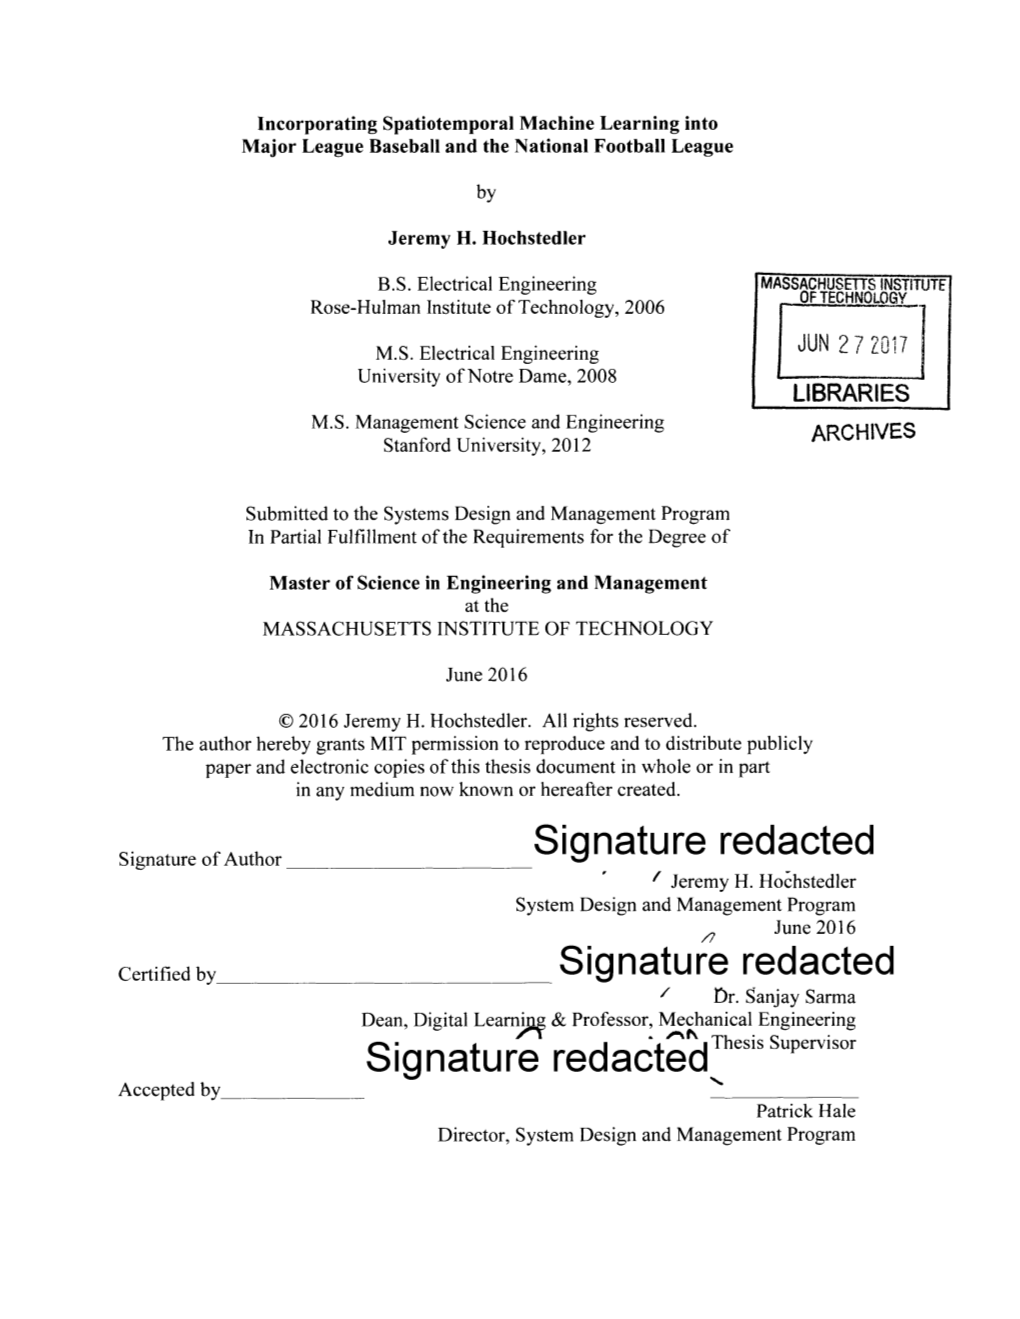 ___Signature Redacted Signature Redacted